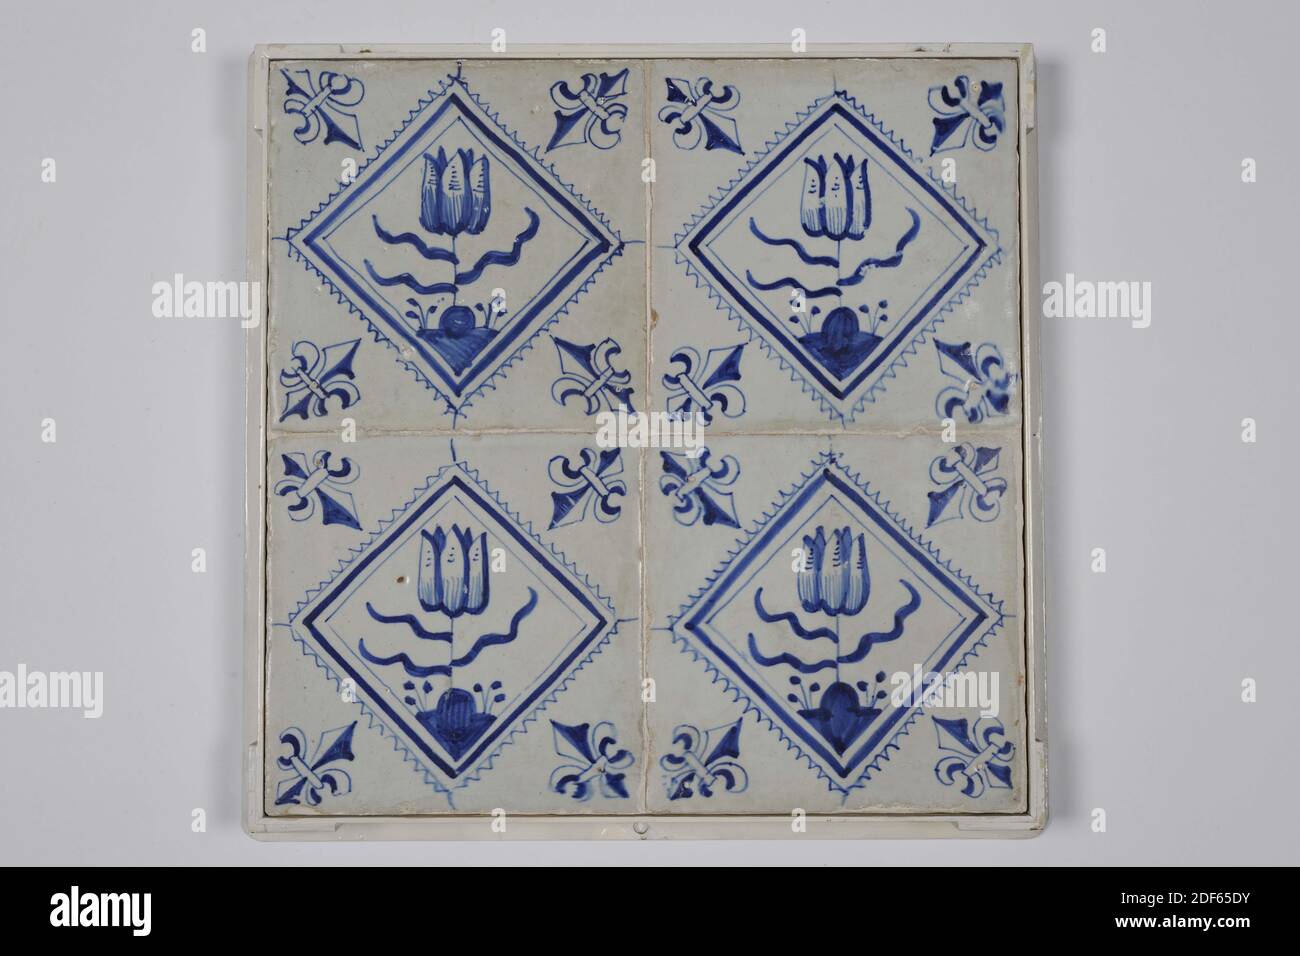 Champ de carreaux, Anonyme, première moitié du XVIIe siècle, glaçure d'étain, faïence, avec cadre : 28 x 28 x 3,5cm (280 x 280 x 35mm), carreau : 13 x 13 x 1,2 cm (130 x 130 x 12 mm), tulipe, pays-Bas du Nord, Tegelveld de quatre (deux par deux) carreaux de faïence recouverts de vernis d'étain et peints en bleu. Les tulipes sont représentées dans un carré dentelé sur les carreaux. La tuile a un motif de coin en tant que nénuphar, Date1985 Banque D'Images